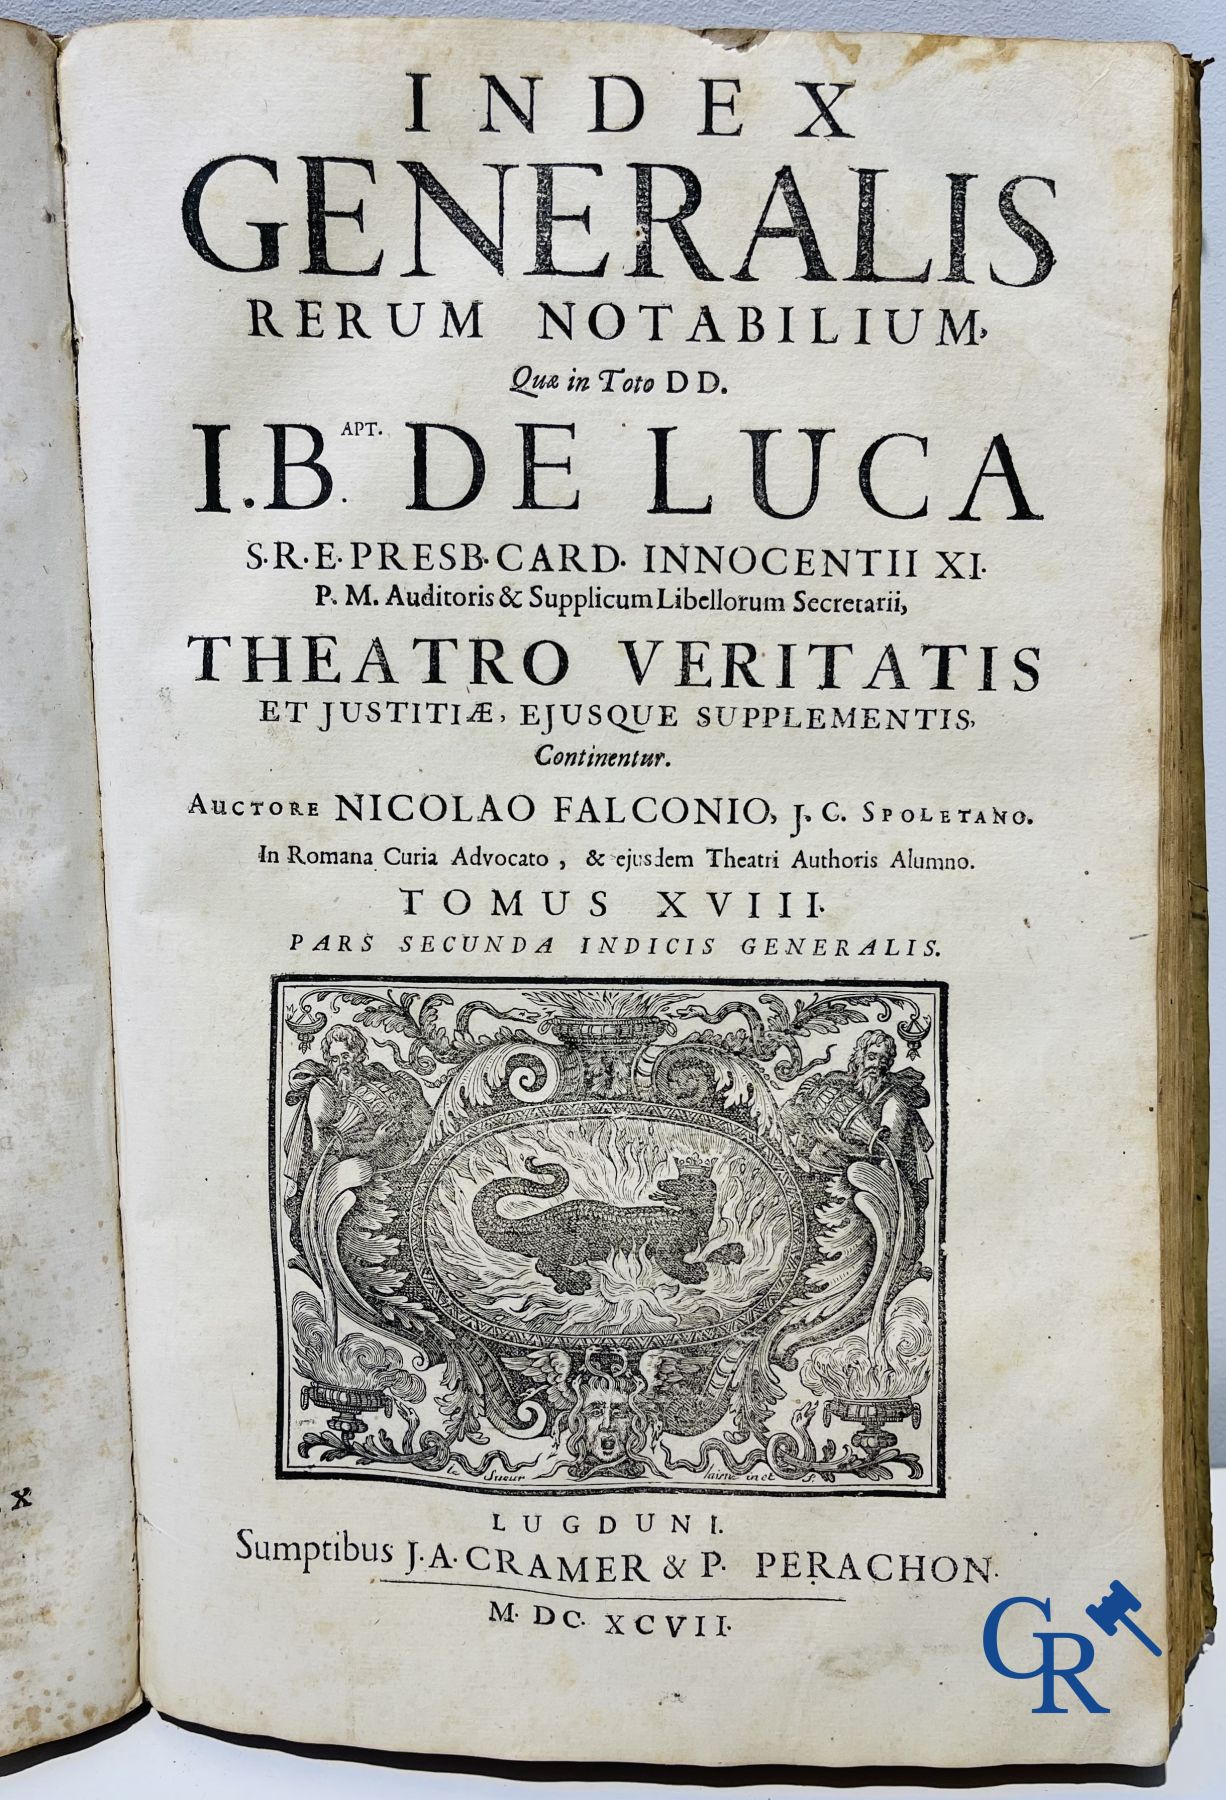 Early printed books: Giovanni Battista de Luca, Theatrum veritatis et justitiae. J.A. Cramer & Phili - Image 10 of 13